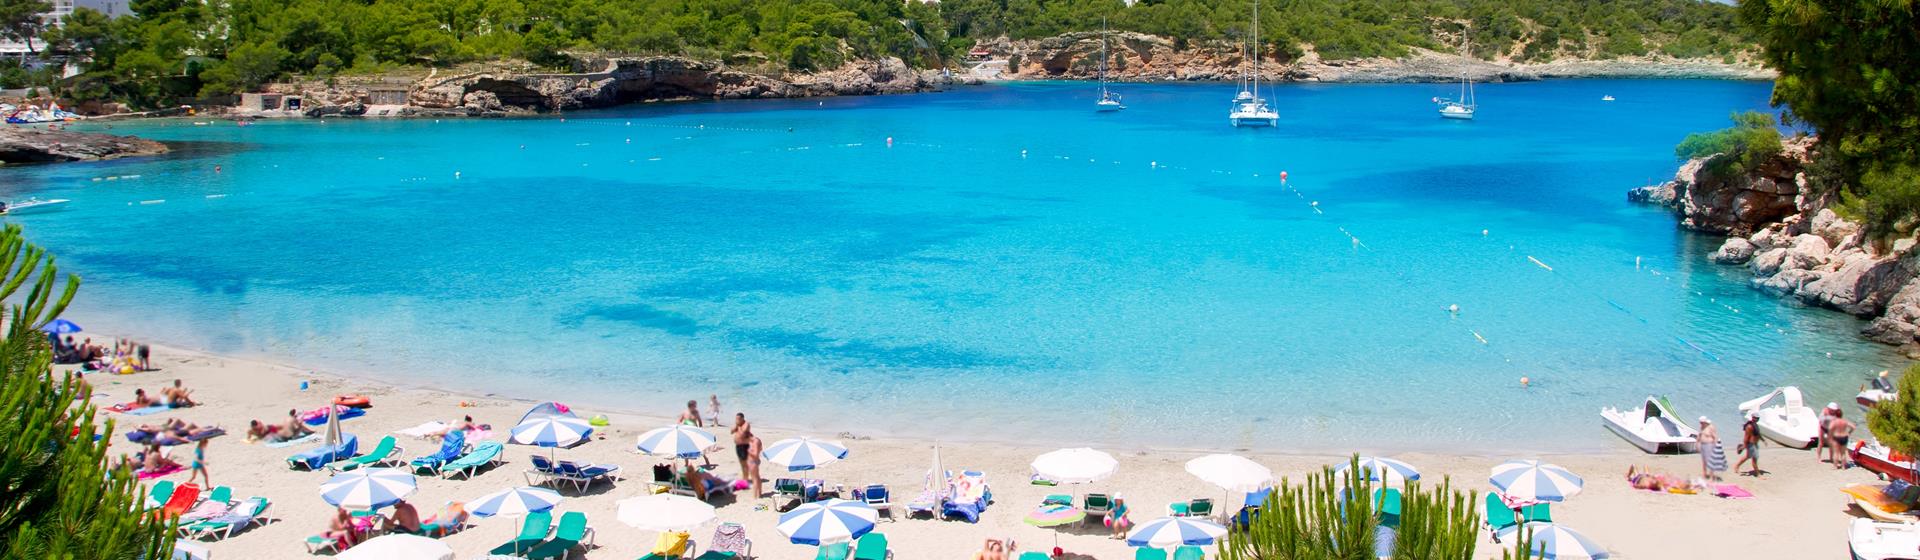 Holidays to Ibiza